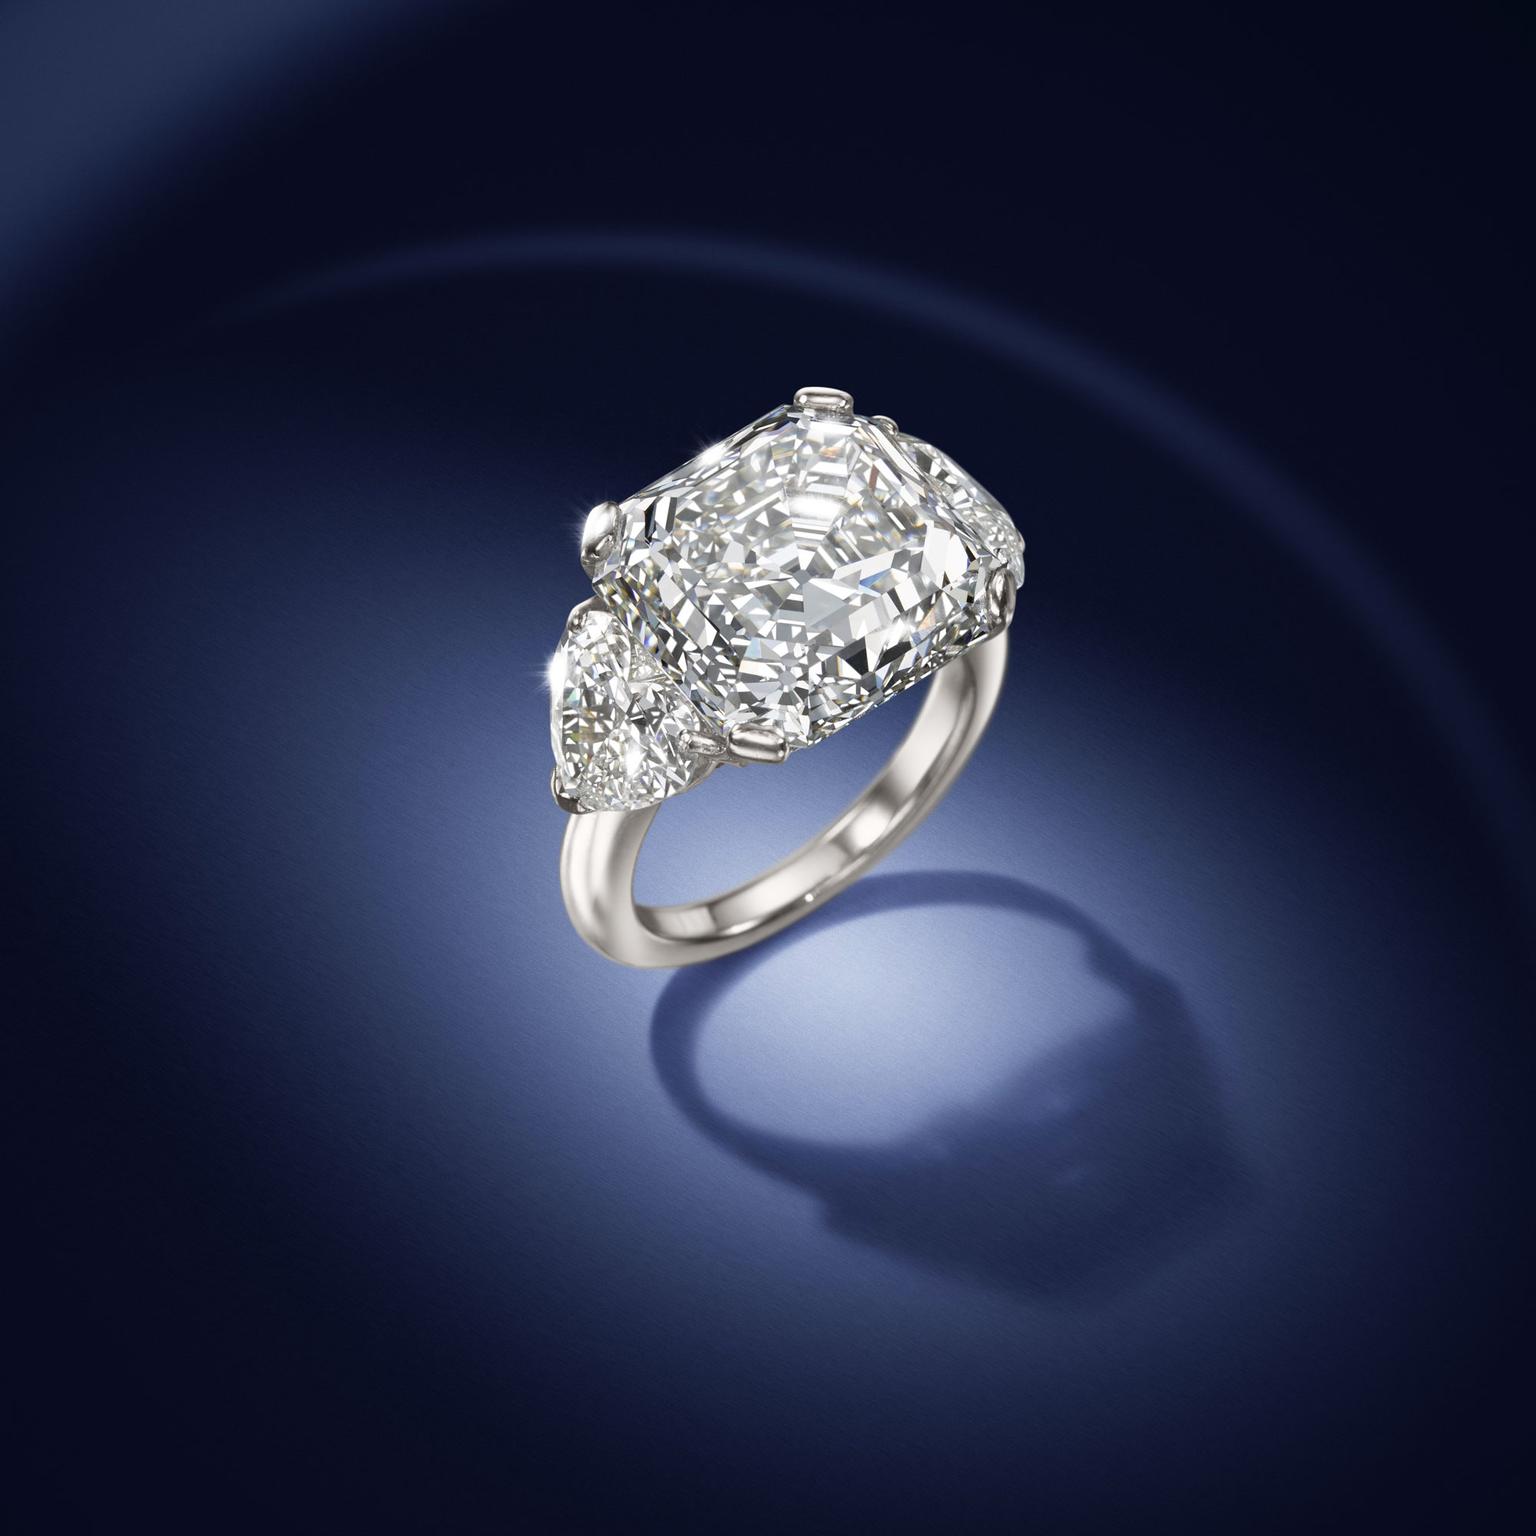 David Morrris Asscher-cut diamond ring